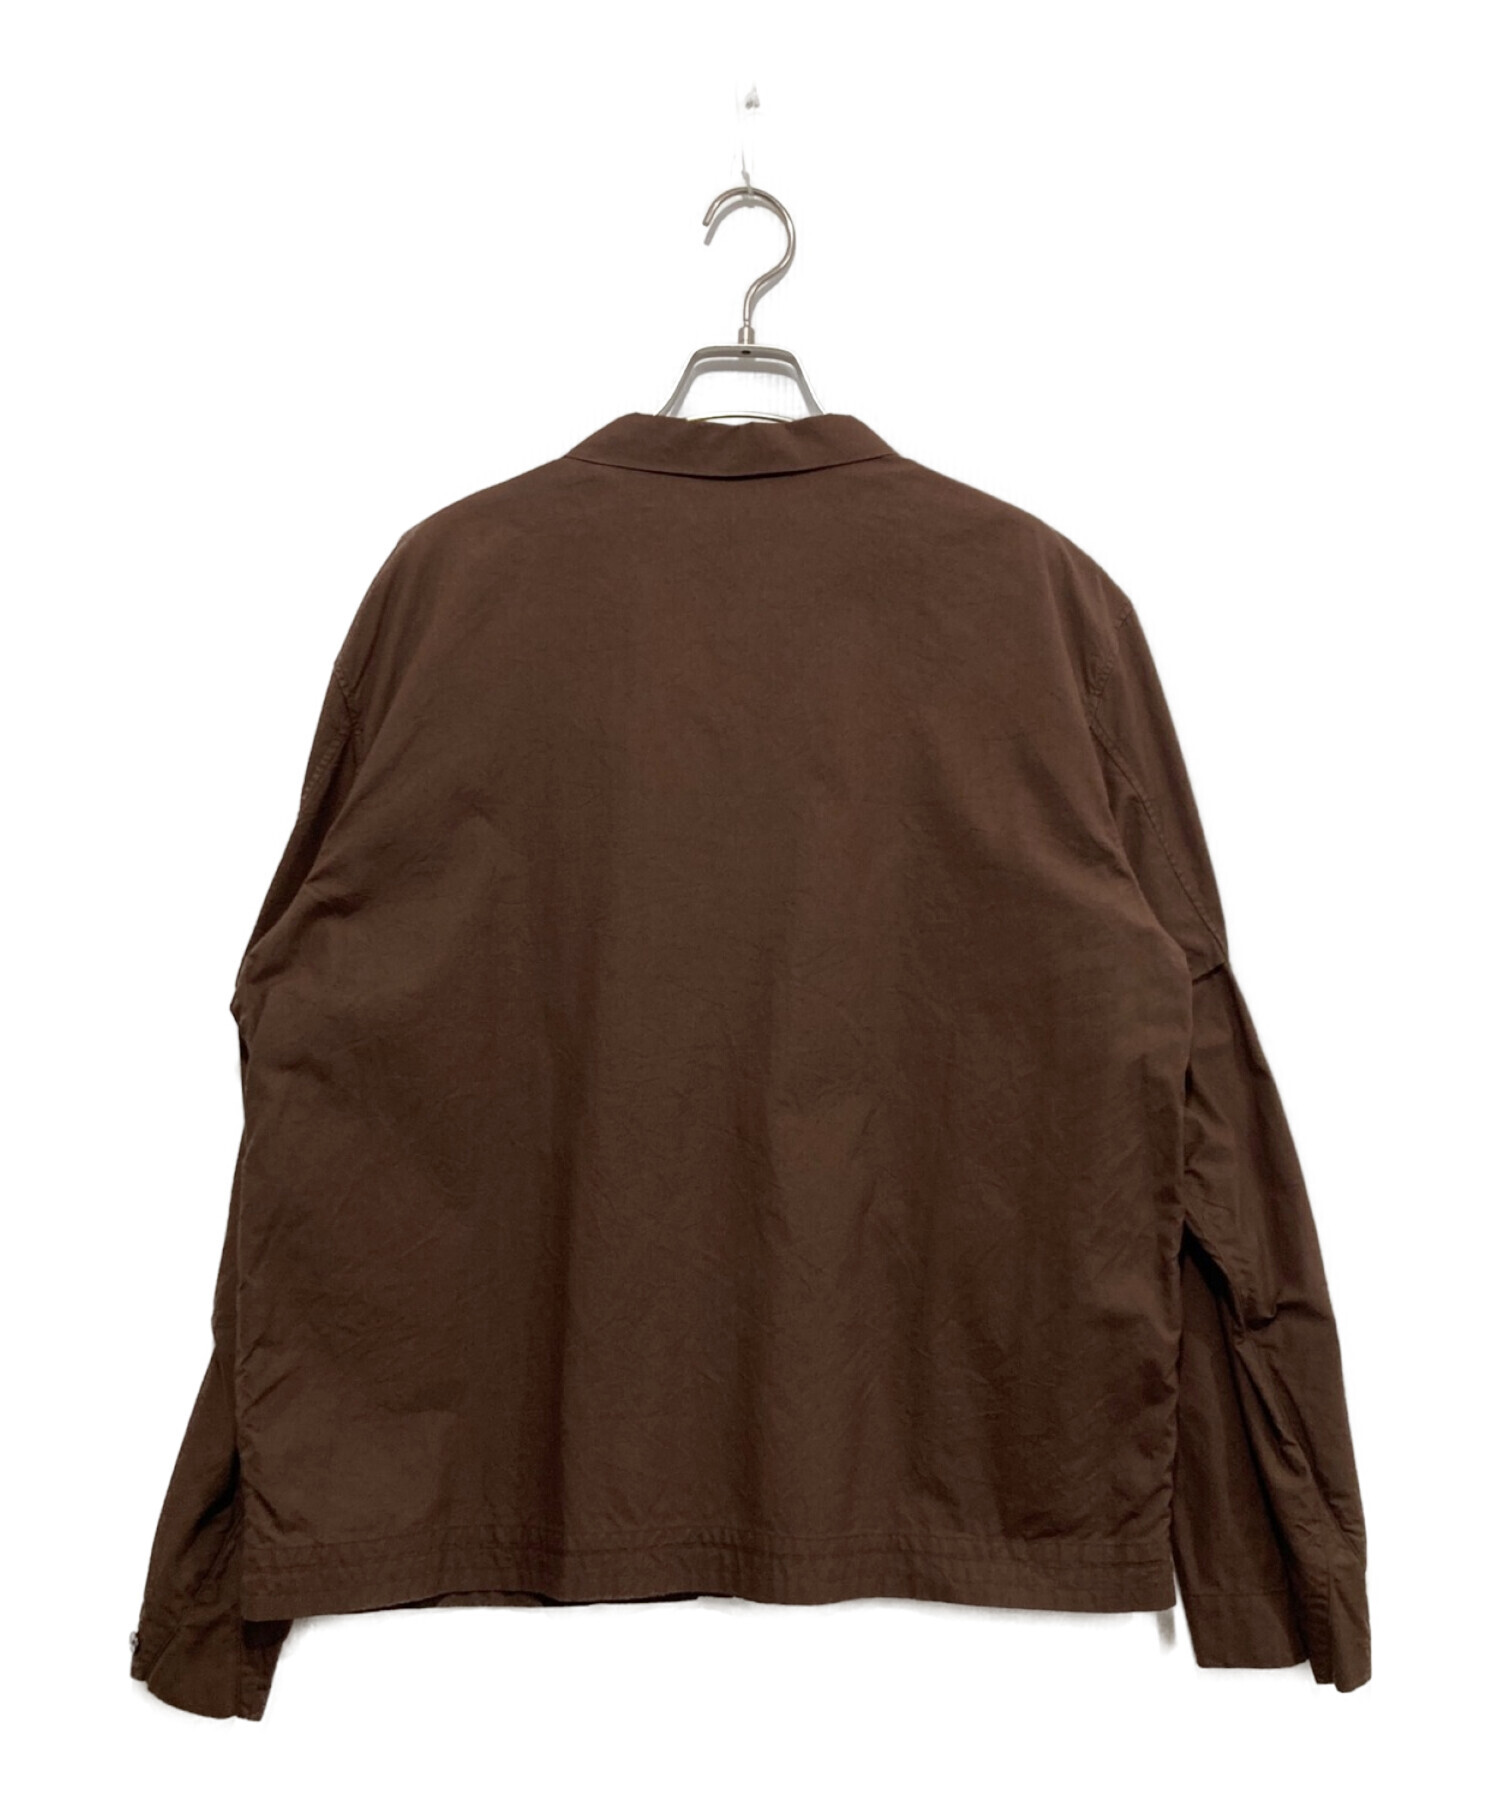 SH (エスエイチ) フライトシャツジャケット ブラウン サイズ:M